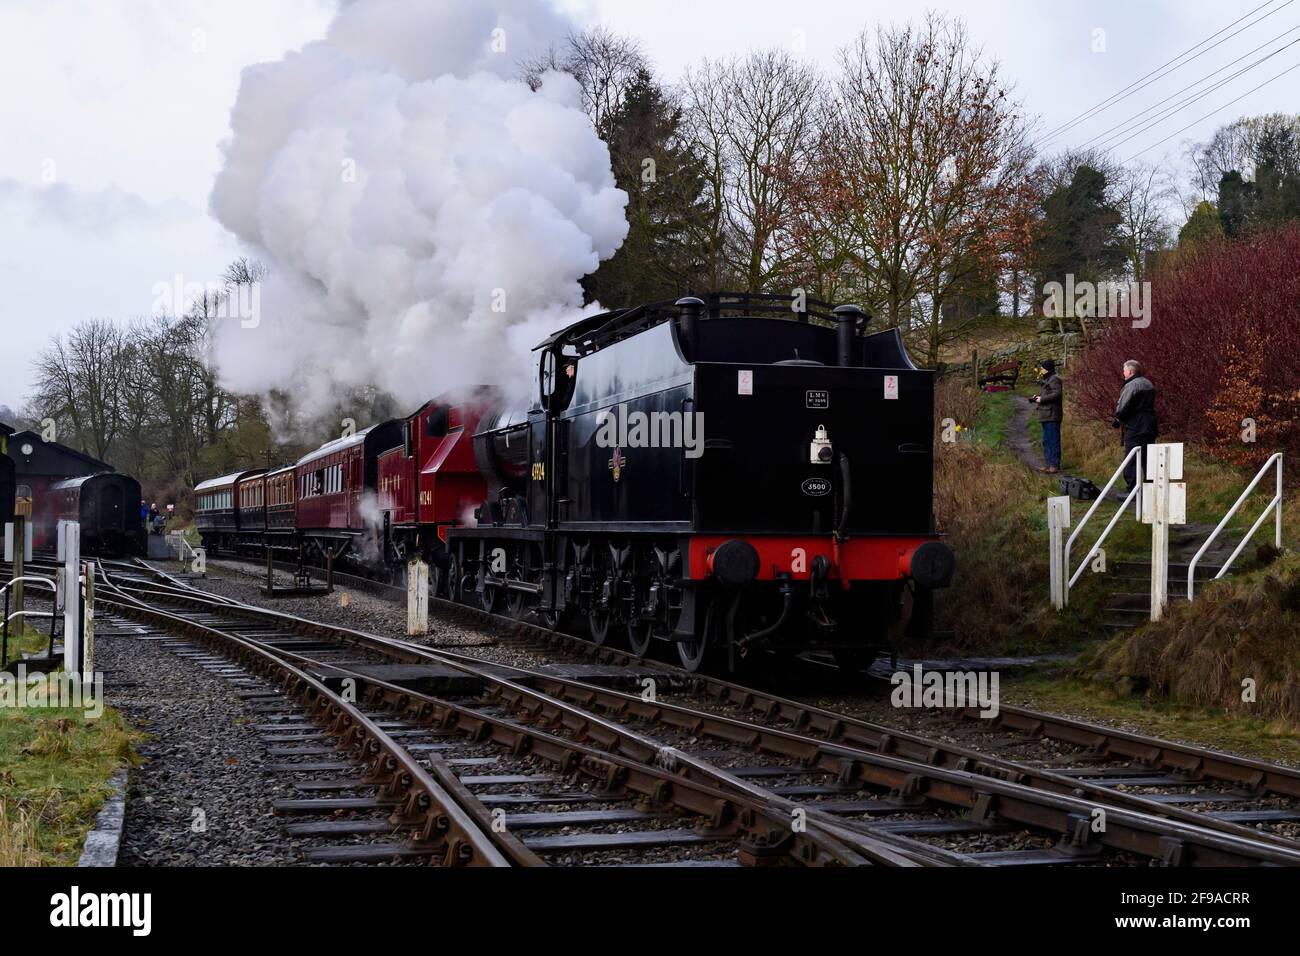 Treni storici a vapore o locos che soffia nuvole di fumo (driver motore in cabina, appassionati e macchine fotografiche) - Oxenhope Station sidings, Yorkshire, Inghilterra, Regno Unito. Foto Stock